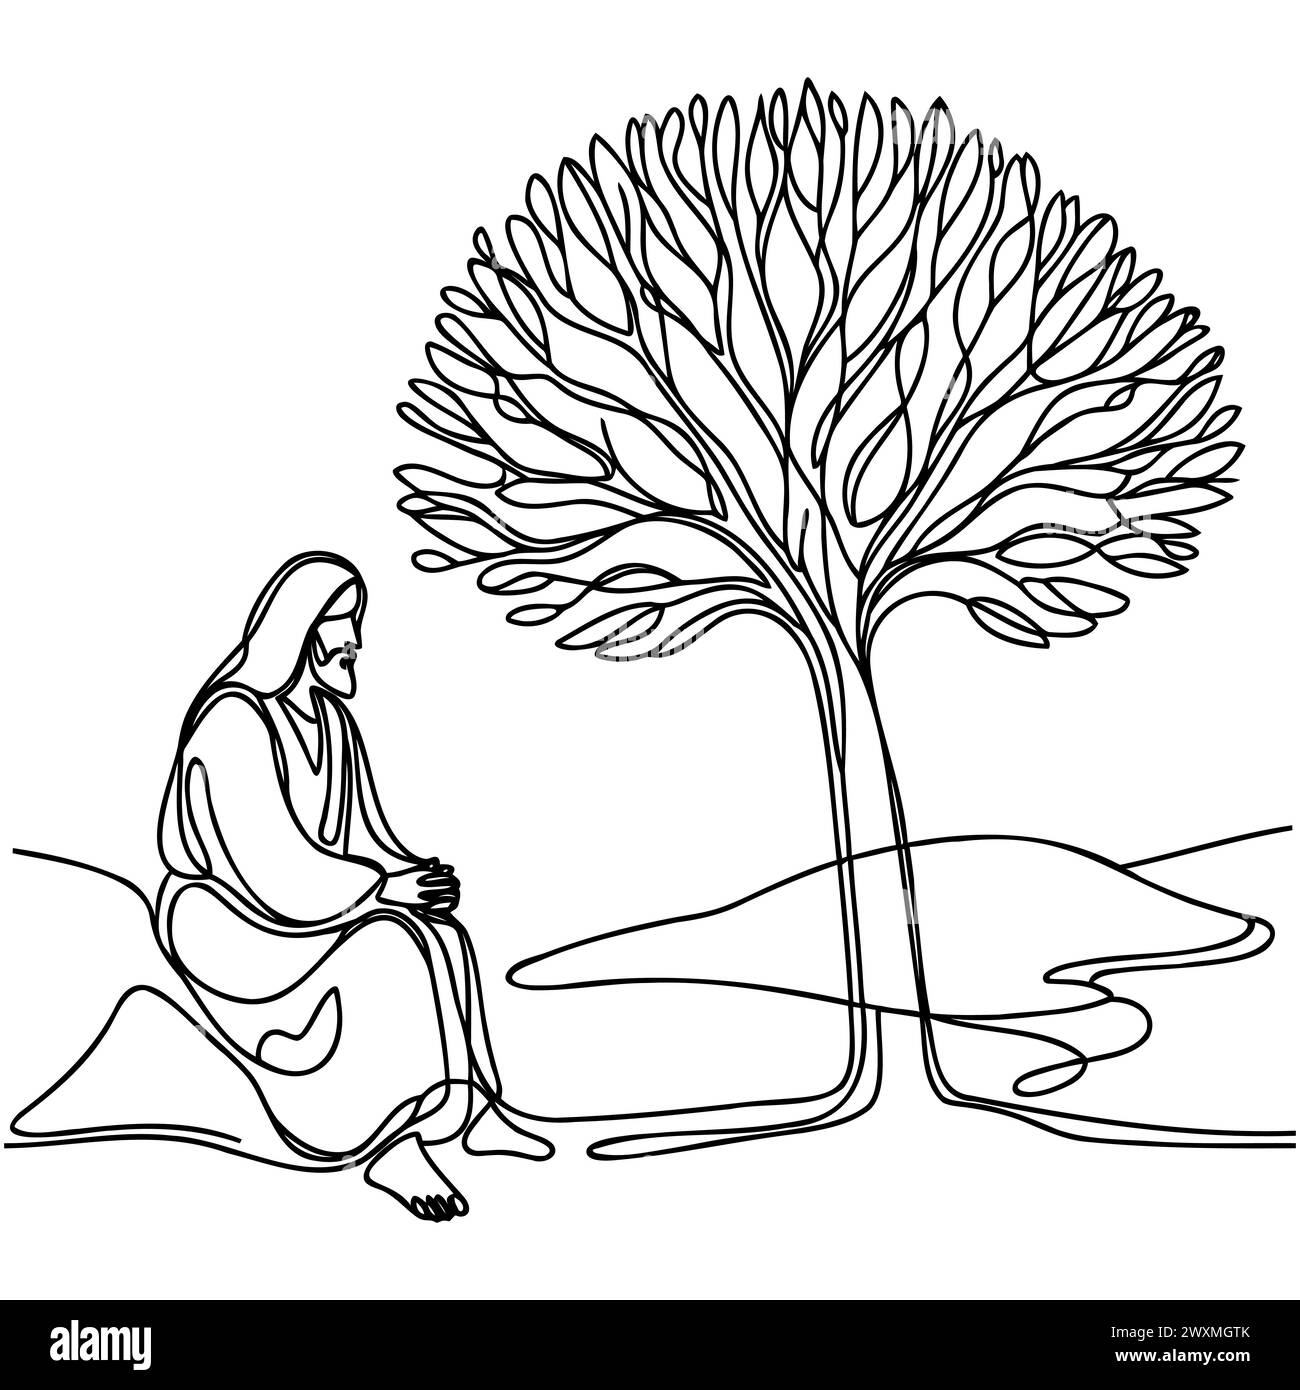 Une ligne pleine représente Jésus-Christ assis sous un arbre. Contour isolé sur fond blanc. Illustration vectorielle Illustration de Vecteur